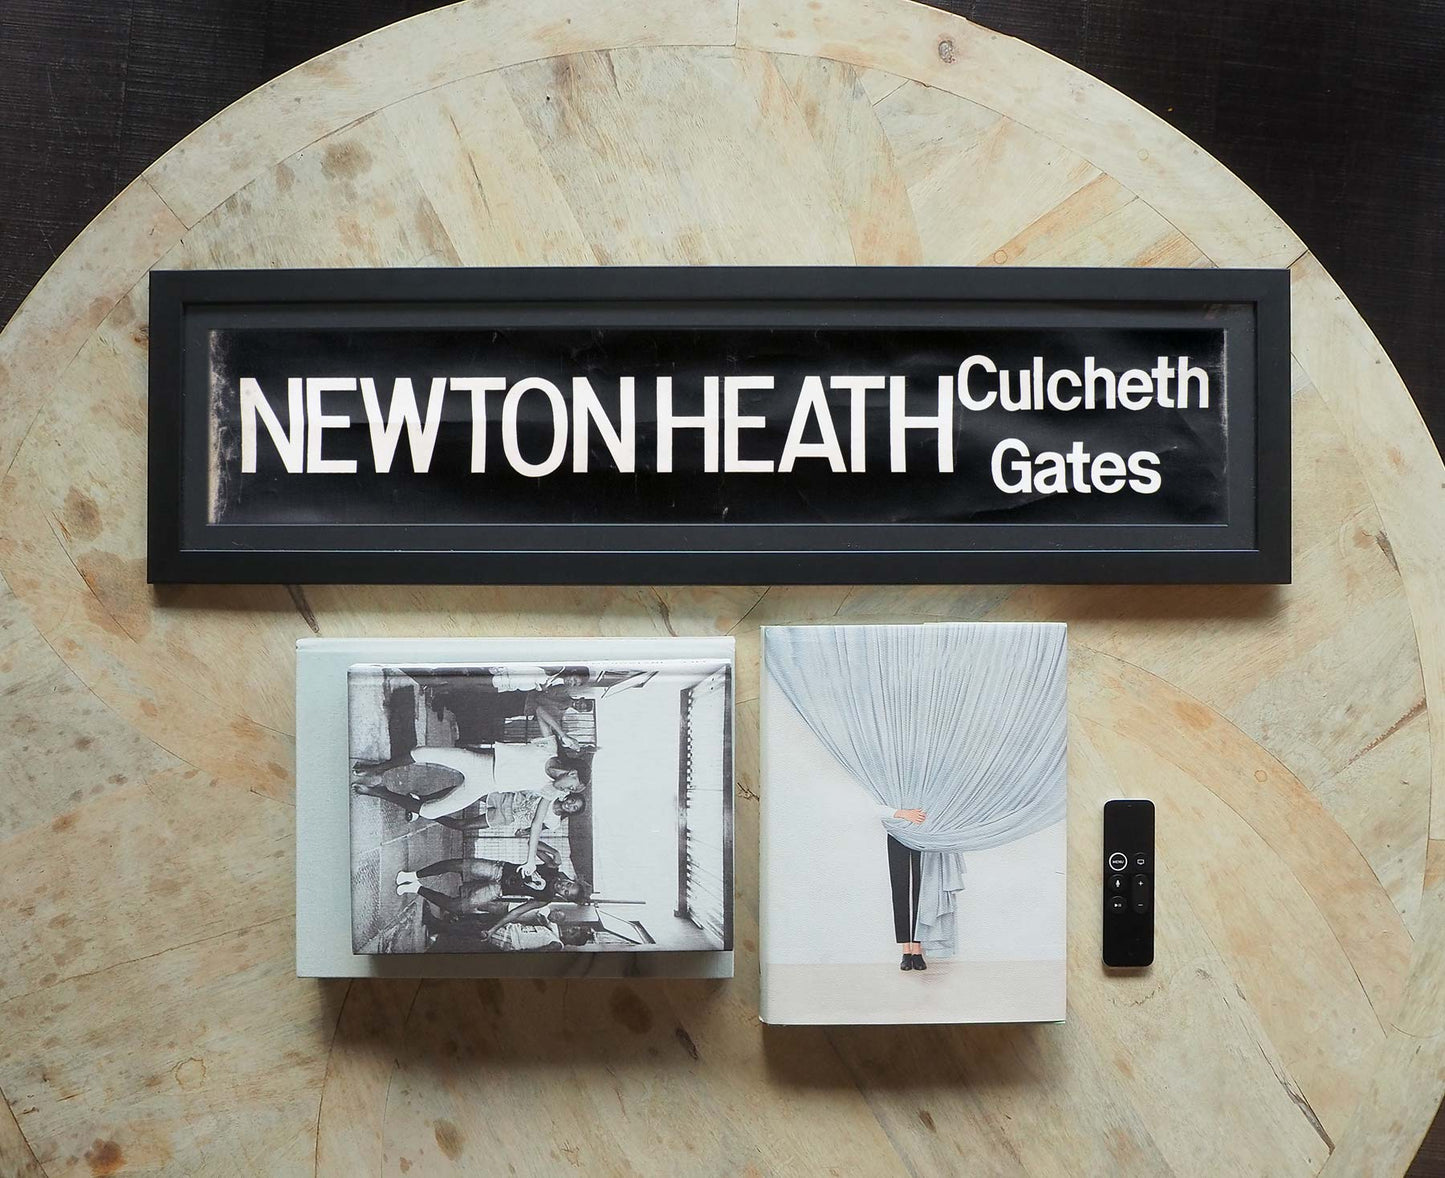 Newton Heath Culcheth Gate Framed Bus Blind